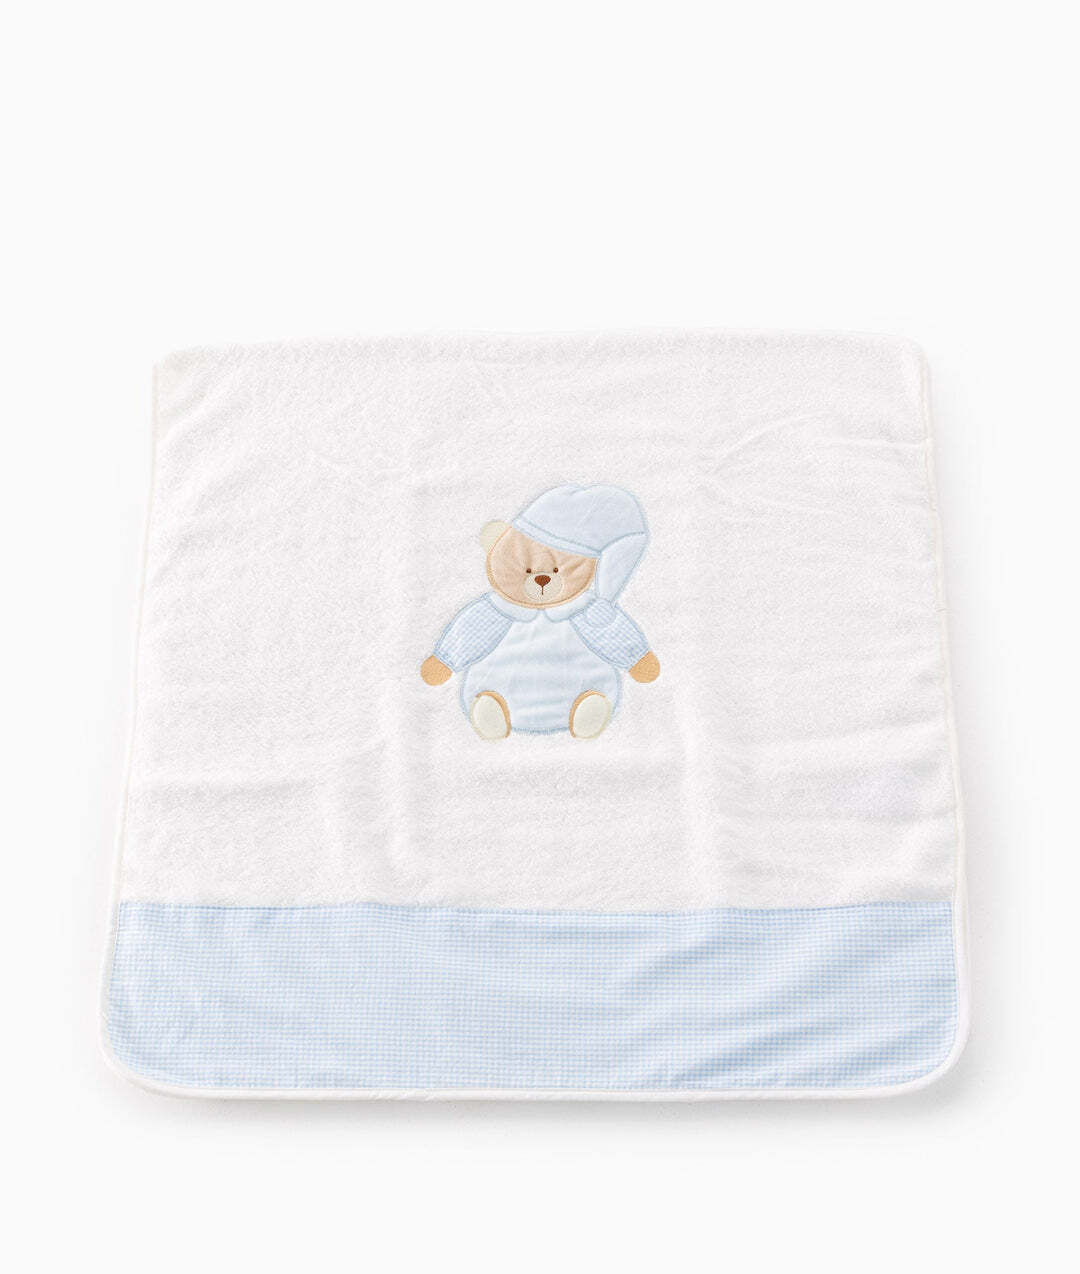 classic-bear-towel-blue-985